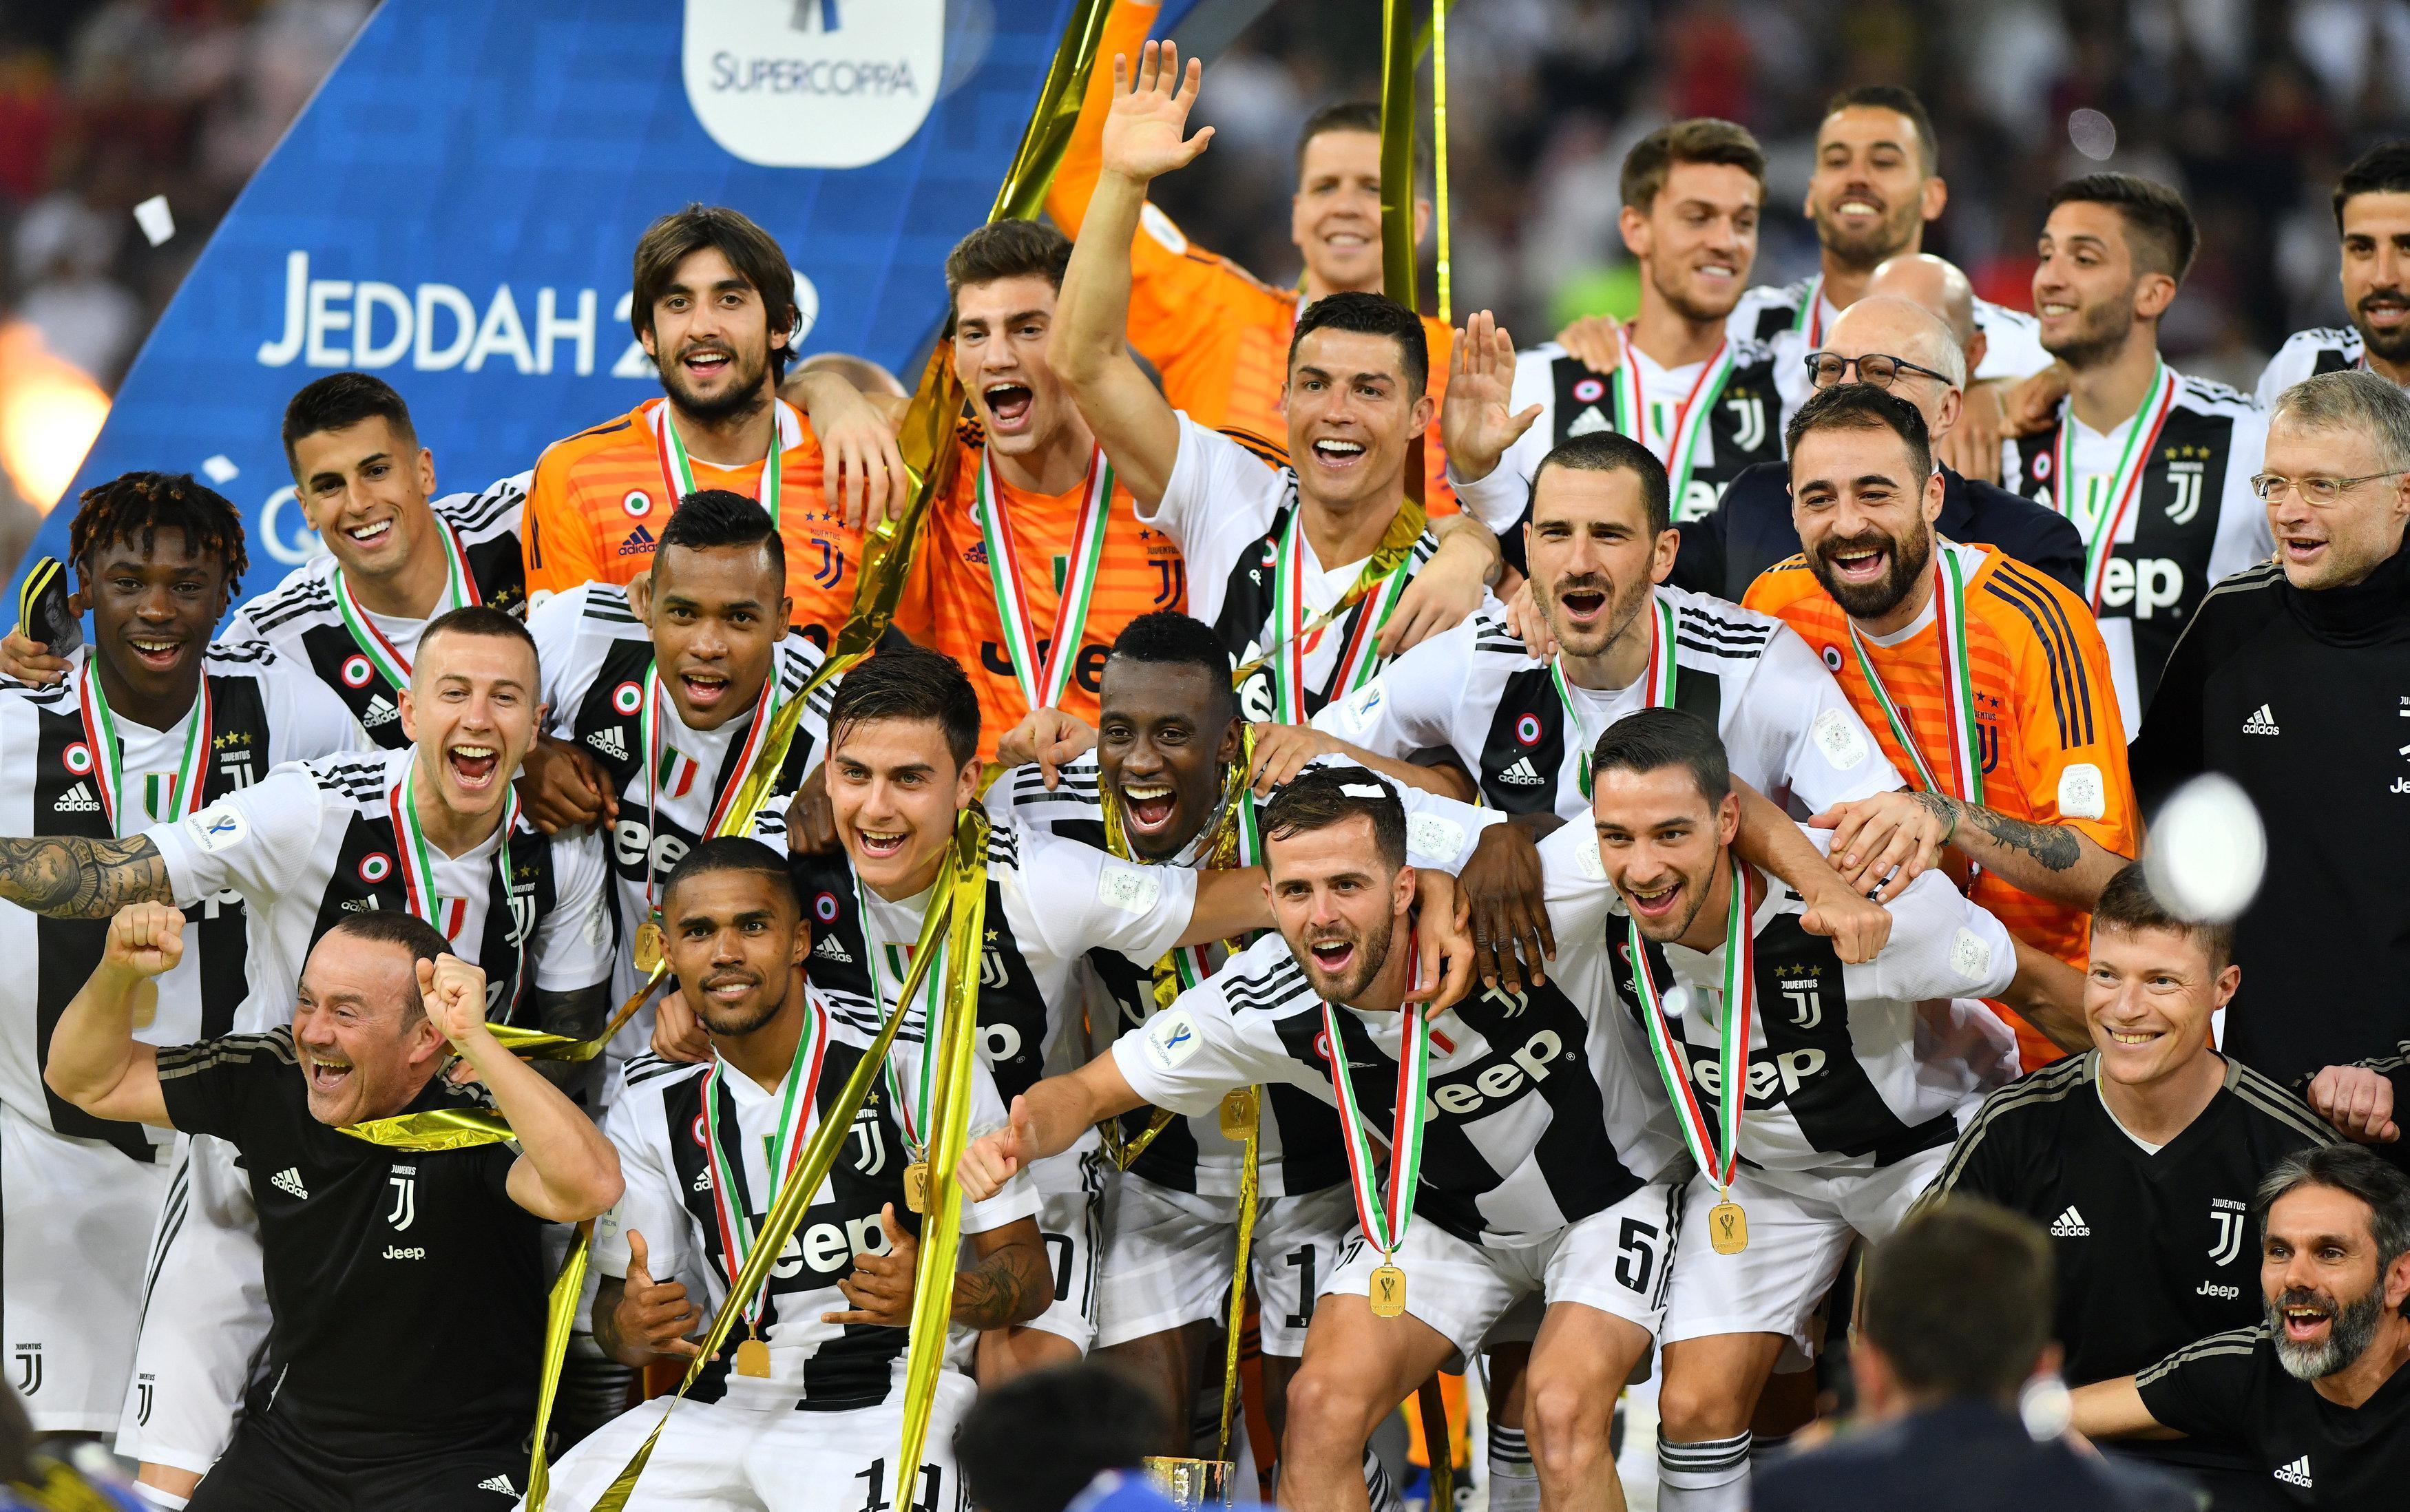 İtalya Süper Kupası Milanı deviren Juventusun oldu